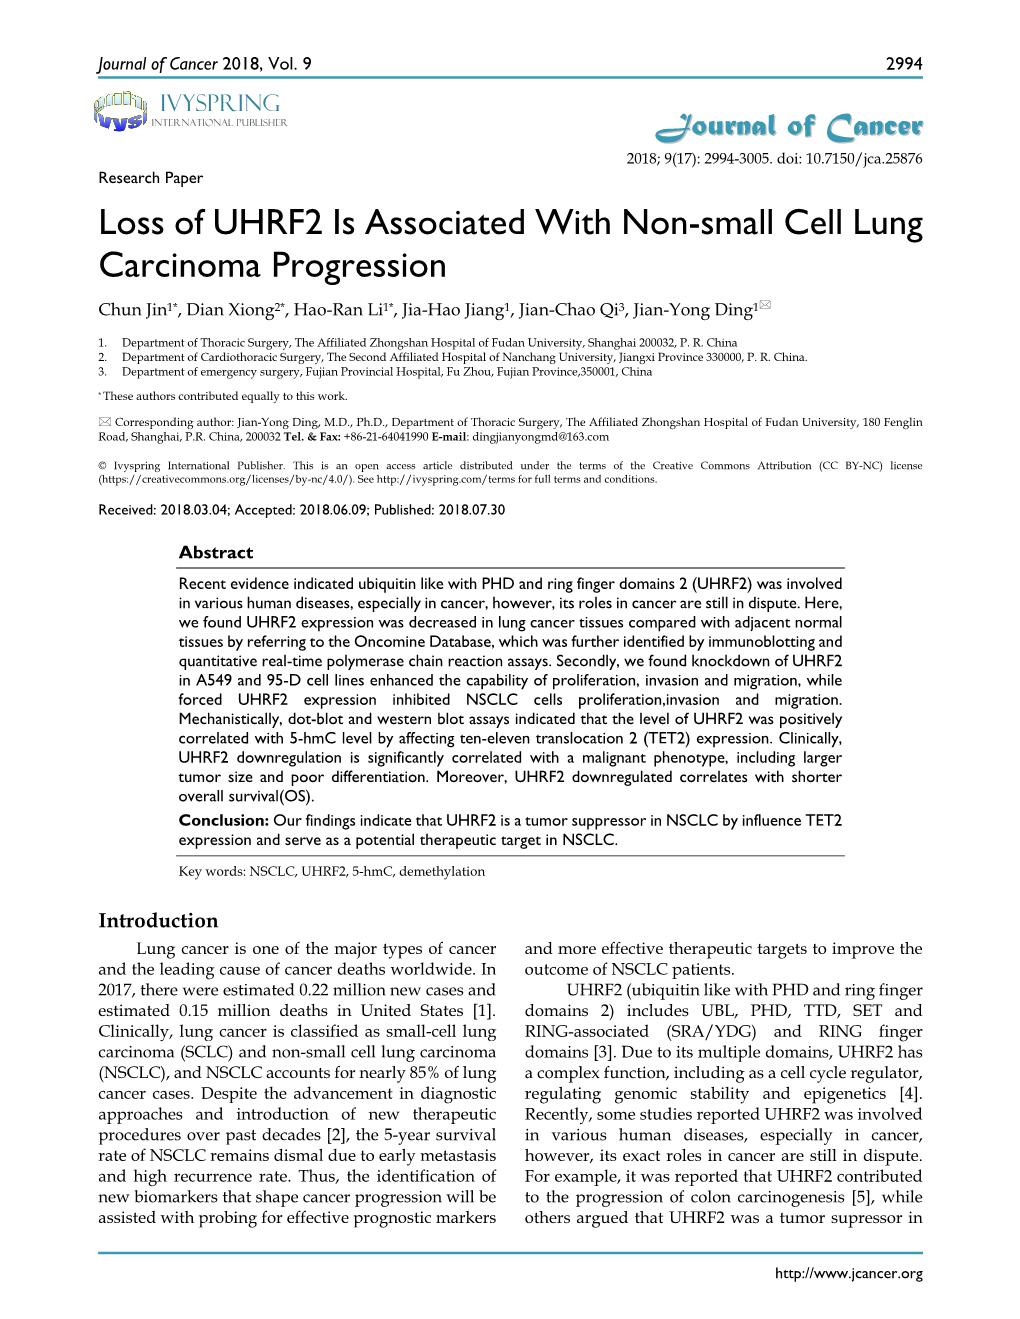 Loss of UHRF2 Is Associated with Non-Small Cell Lung Carcinoma Progression Chun Jin1*, Dian Xiong2*, Hao-Ran Li1*, Jia-Hao Jiang1, Jian-Chao Qi3, Jian-Yong Ding1